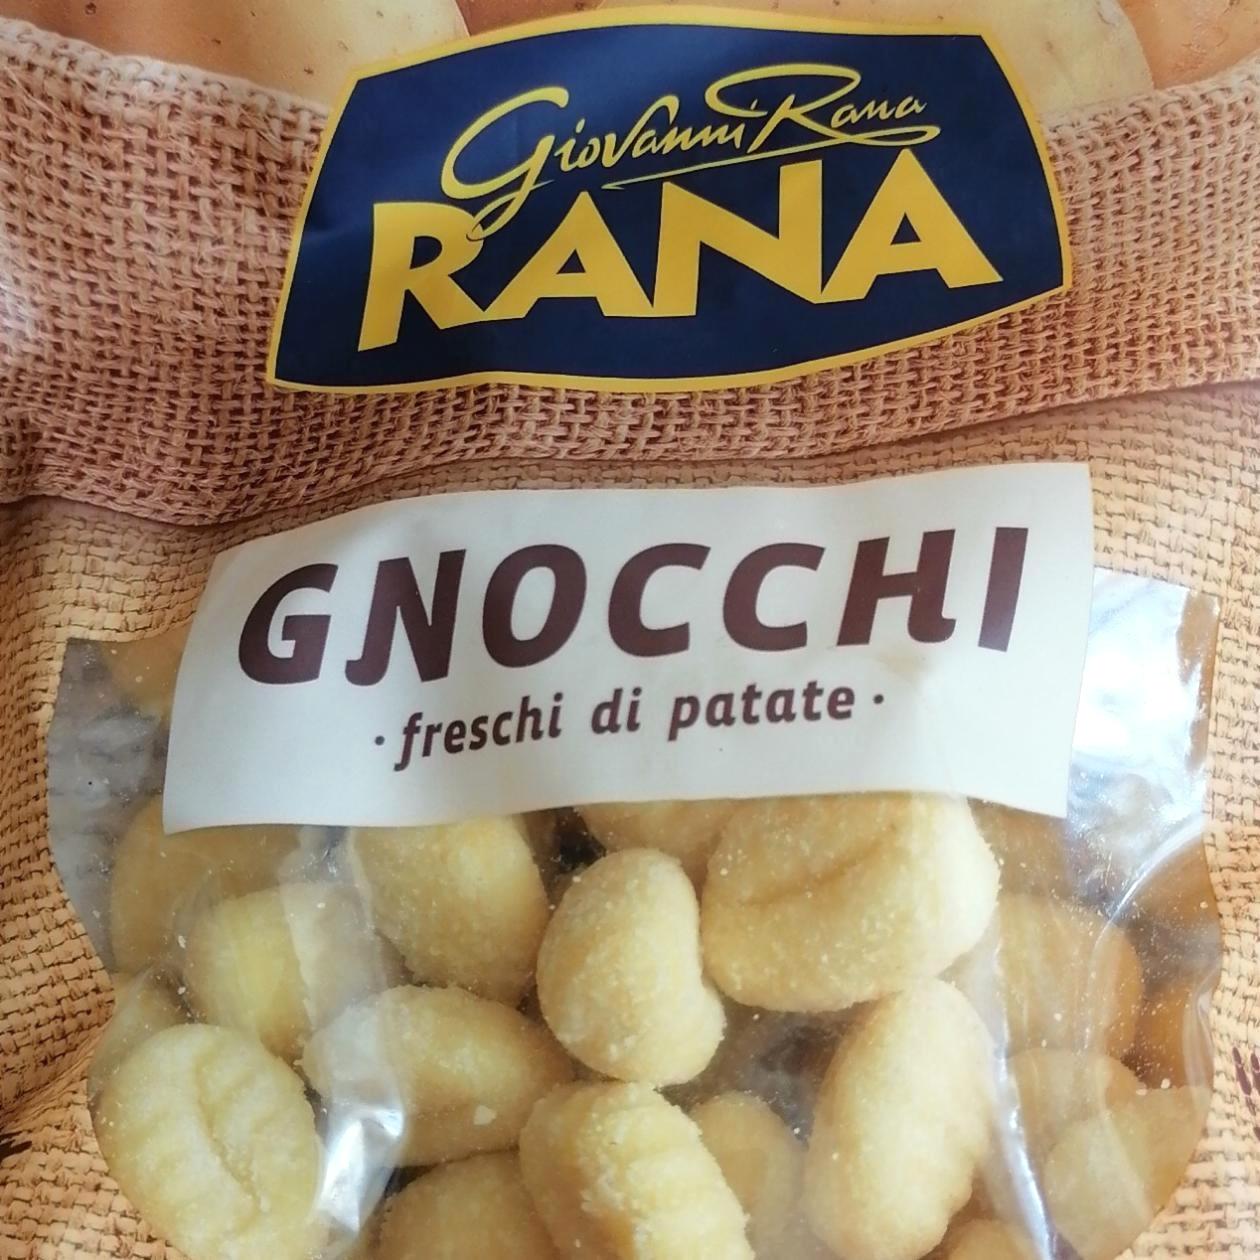 Képek - Gnocchi Rana